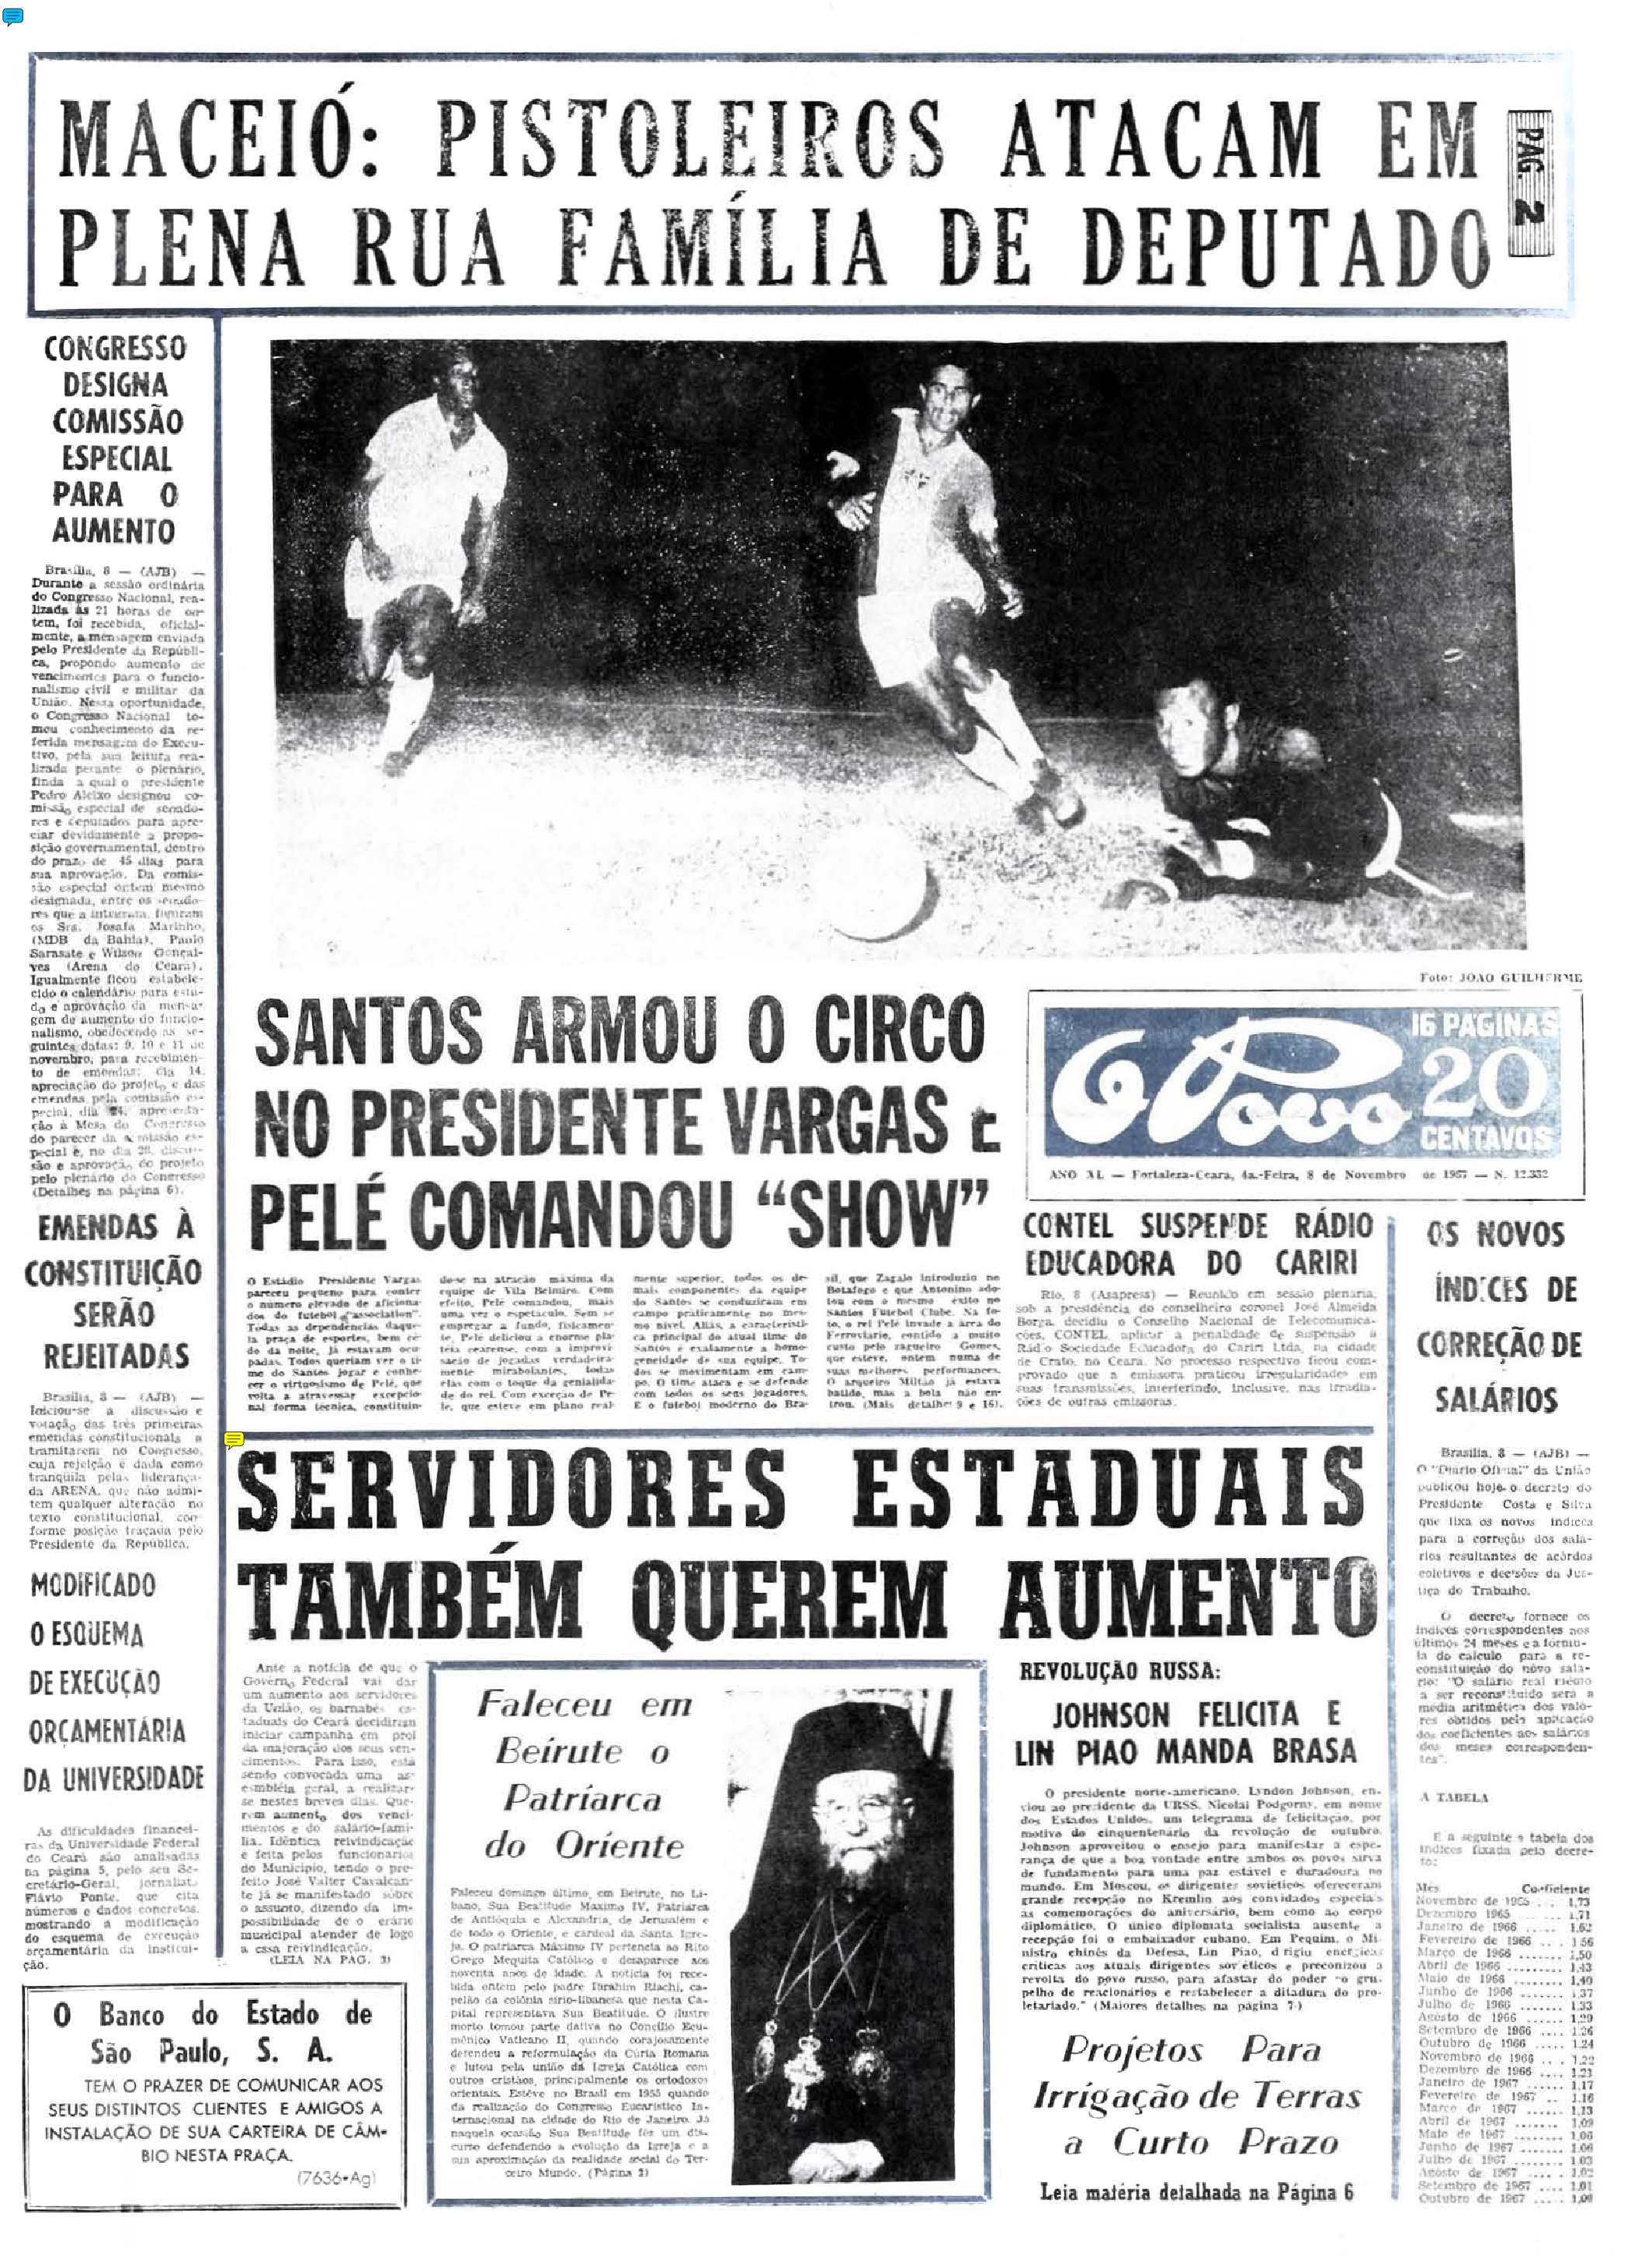 Pelé 80 anos: 8 de novembro de 1967 - Capa do O POVO destaca vitória do Santos sobre o Ferroviário